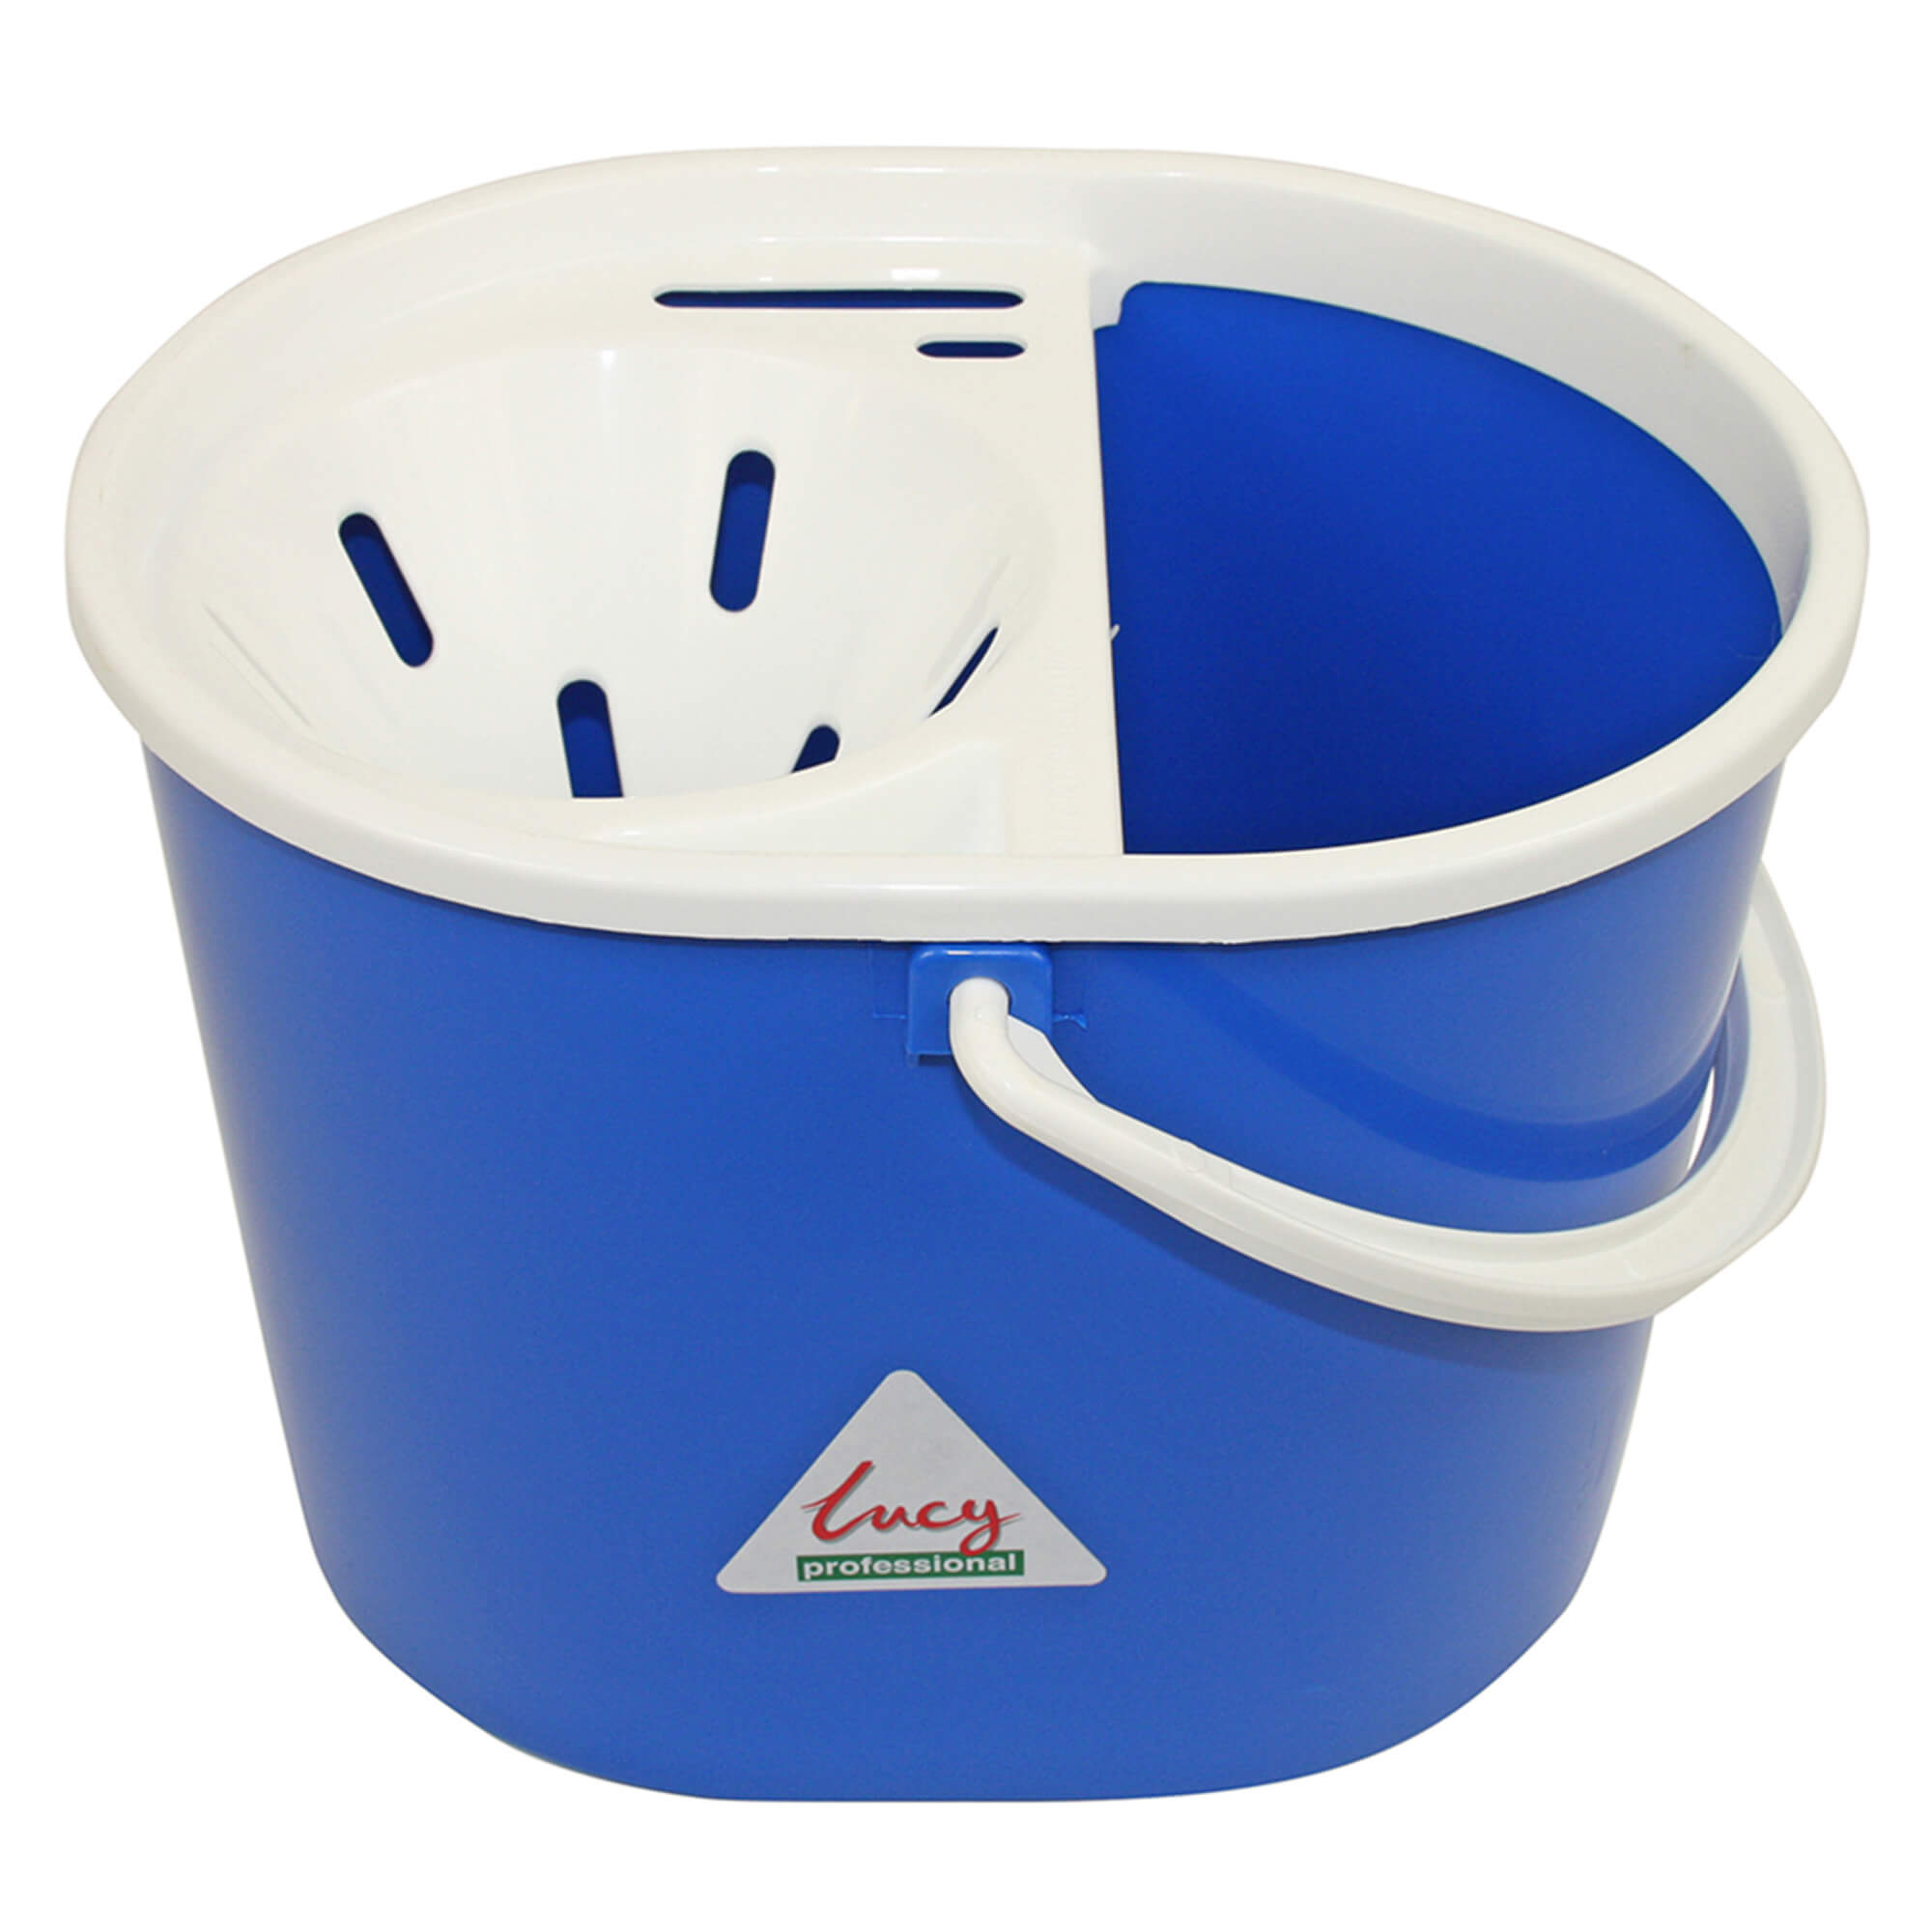 Oval Mop Buckets - Blue